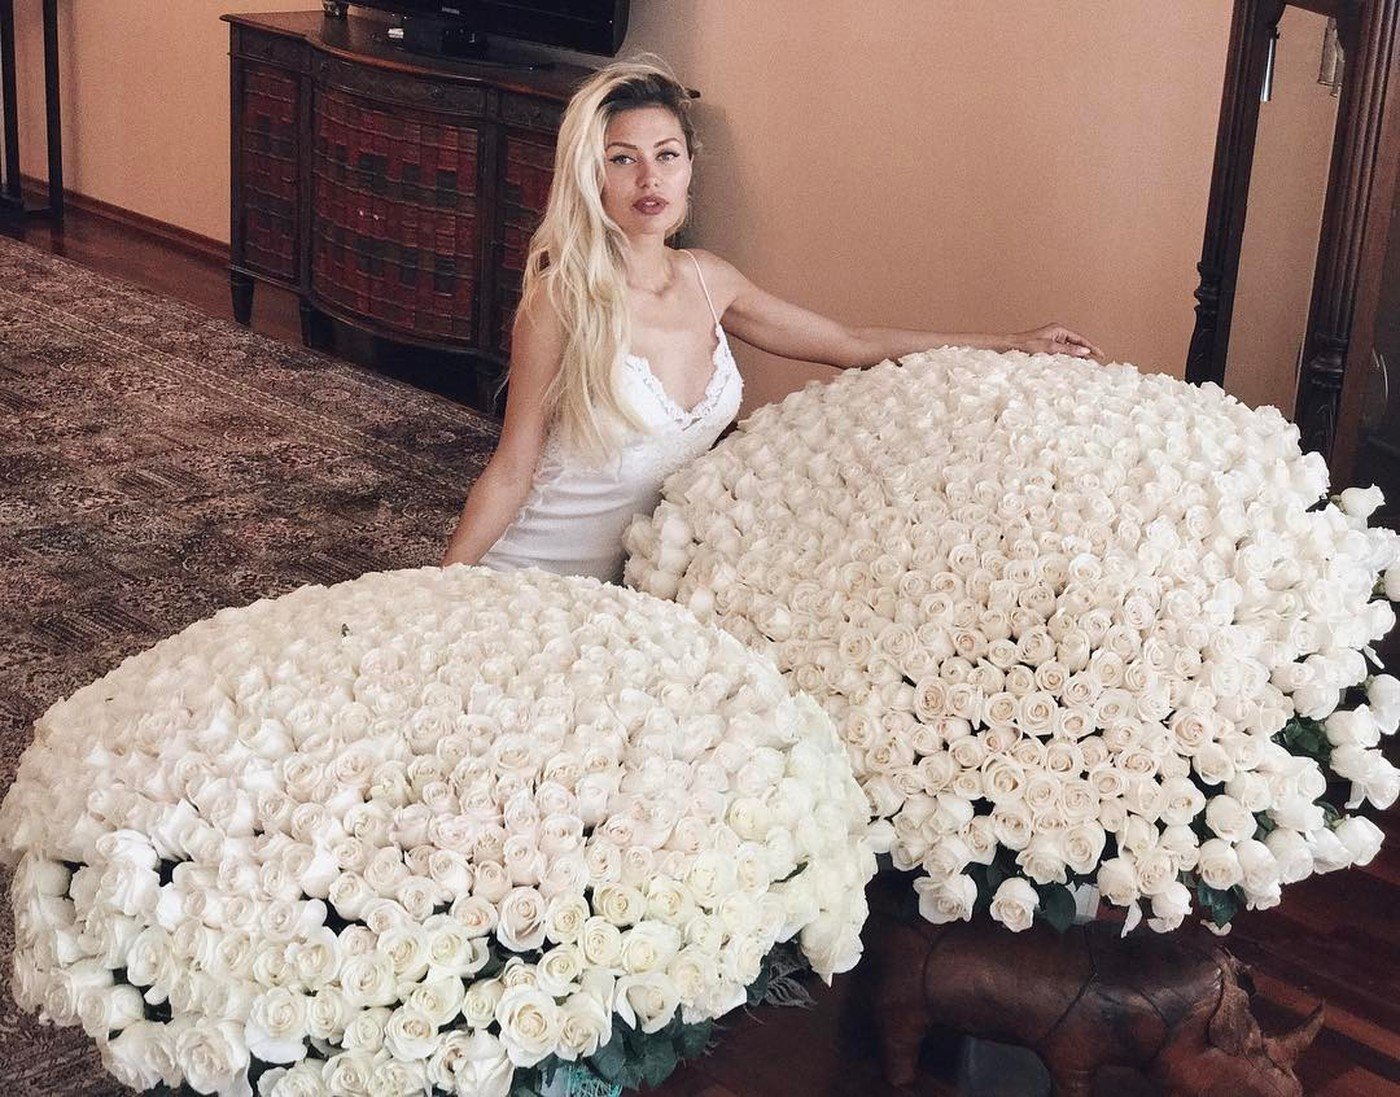 Я хочу туда где правят белые розы. Огромный букет. Девушка с огромным букетом. Девушка с большим букетом роз.